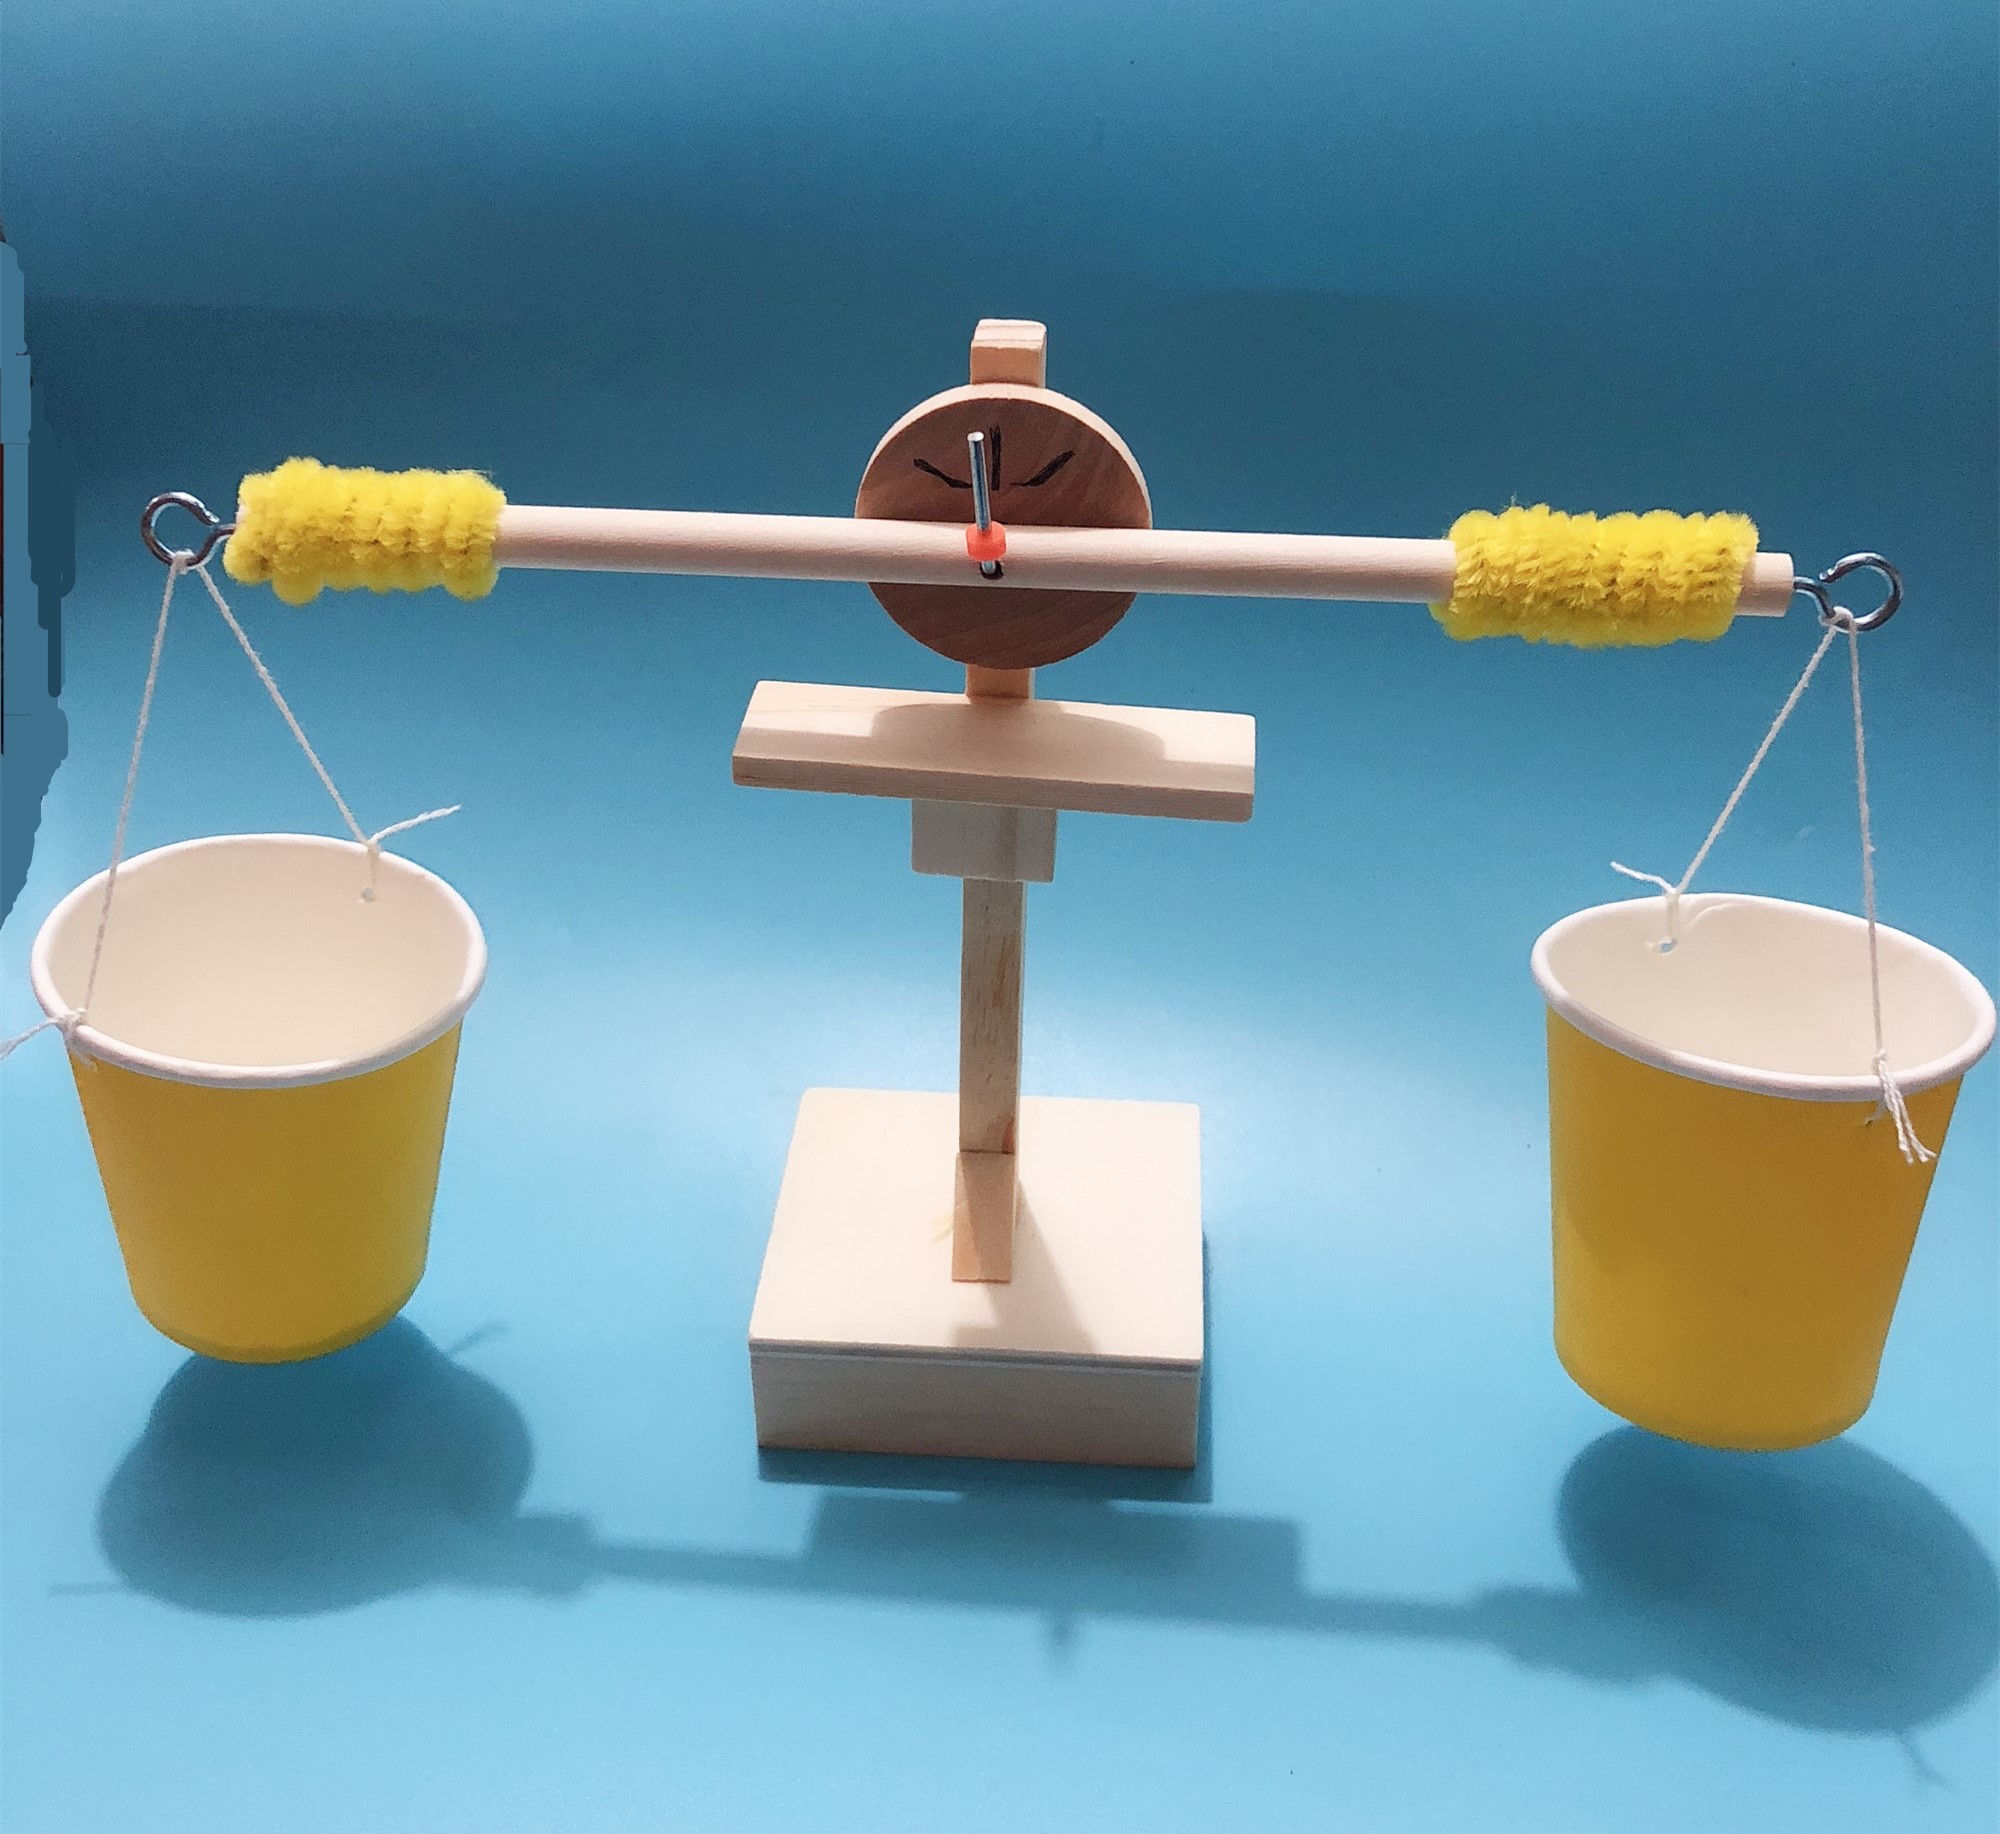 天平小制作 diy科技小发明学生科学实验儿童手工器材料模型玩具